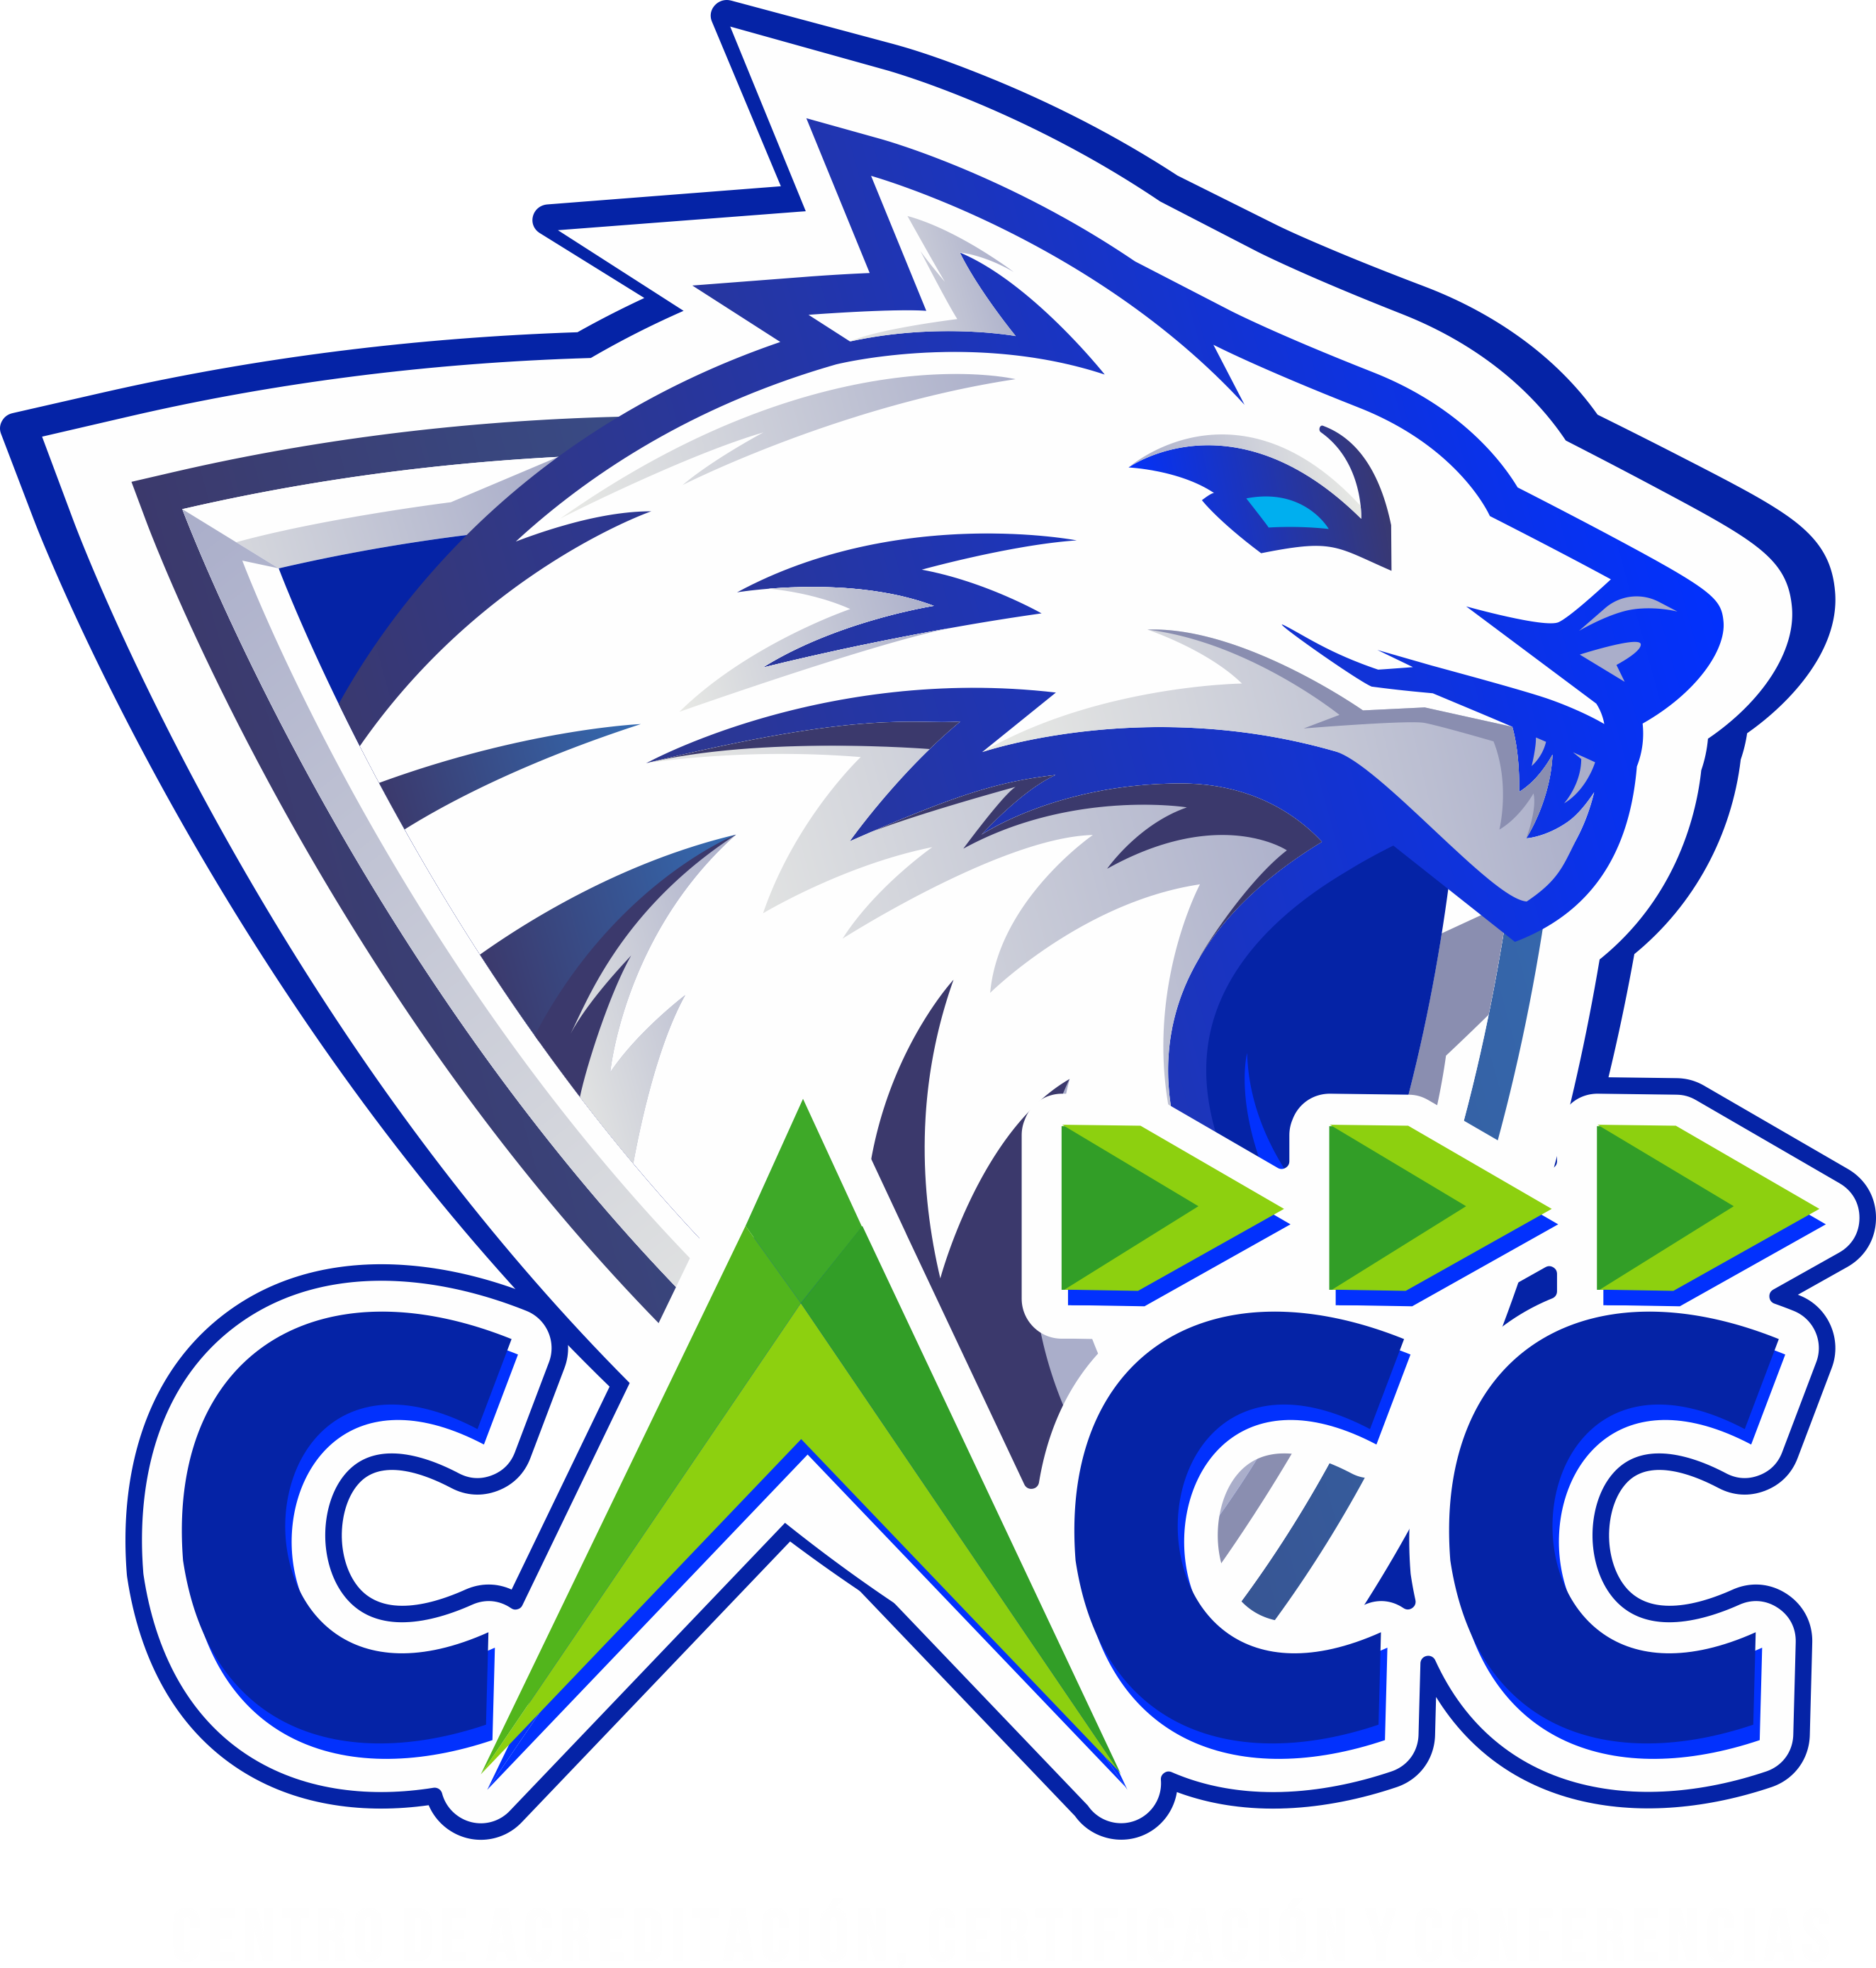 Centro de Acreditación Certificación y Conferencias CACC